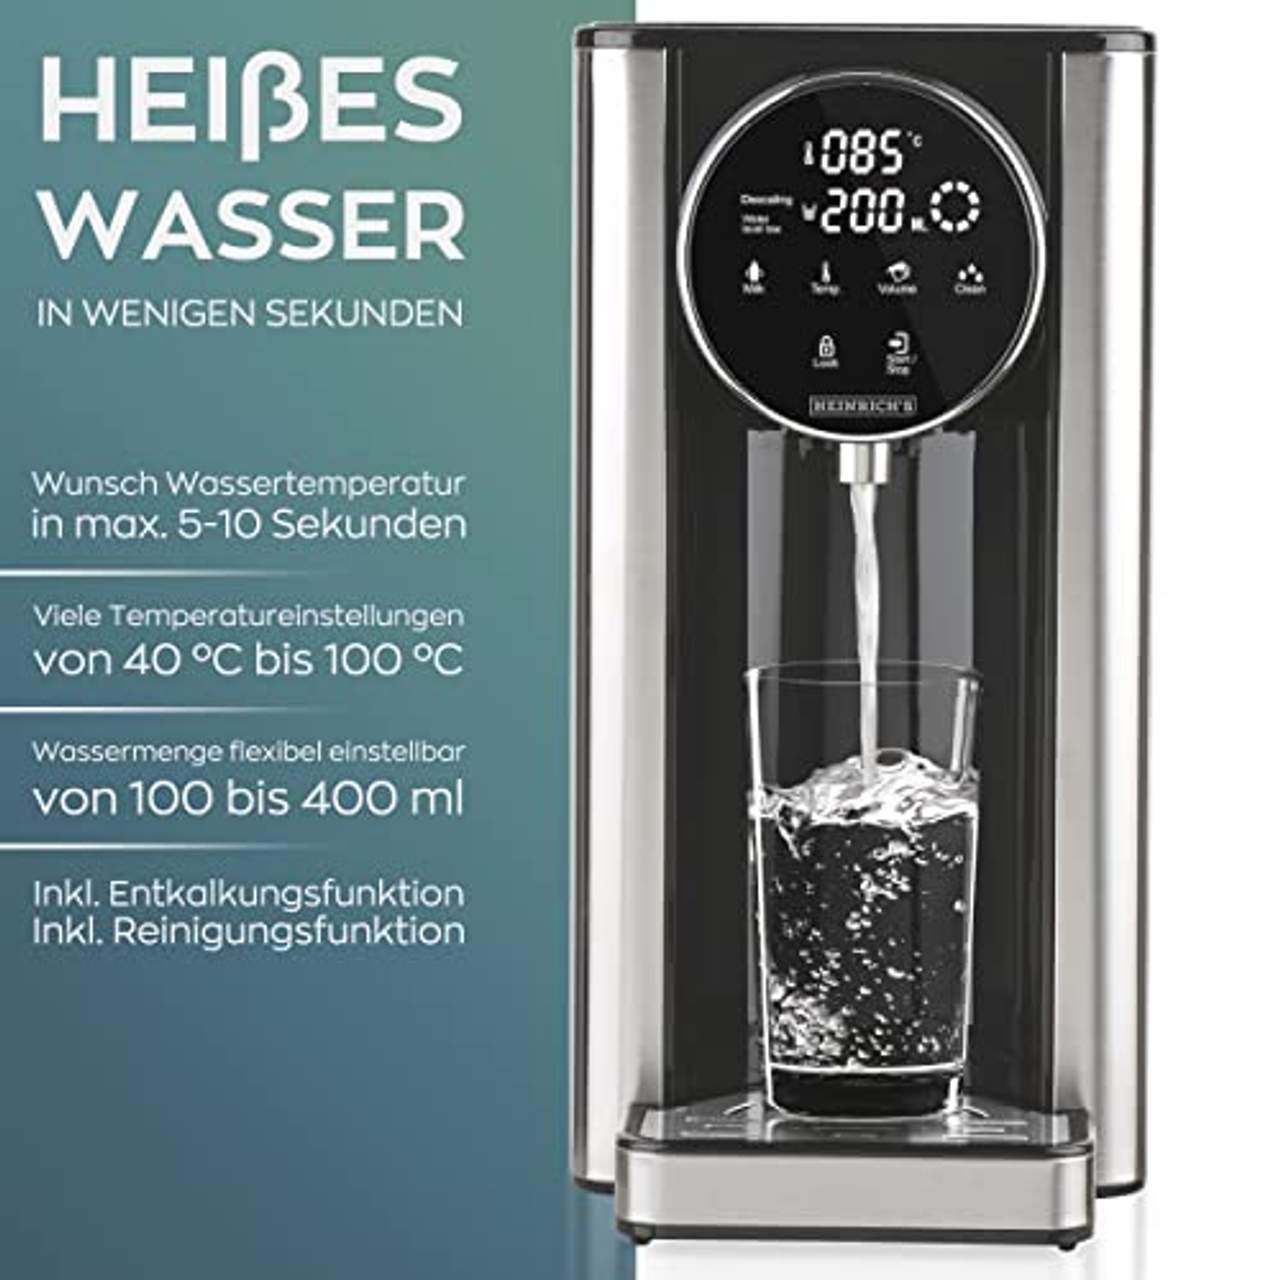 Heinrich´s Heißwasserspender-Heißes Wasser auf Knopfdruck zwischen 40°-100°C